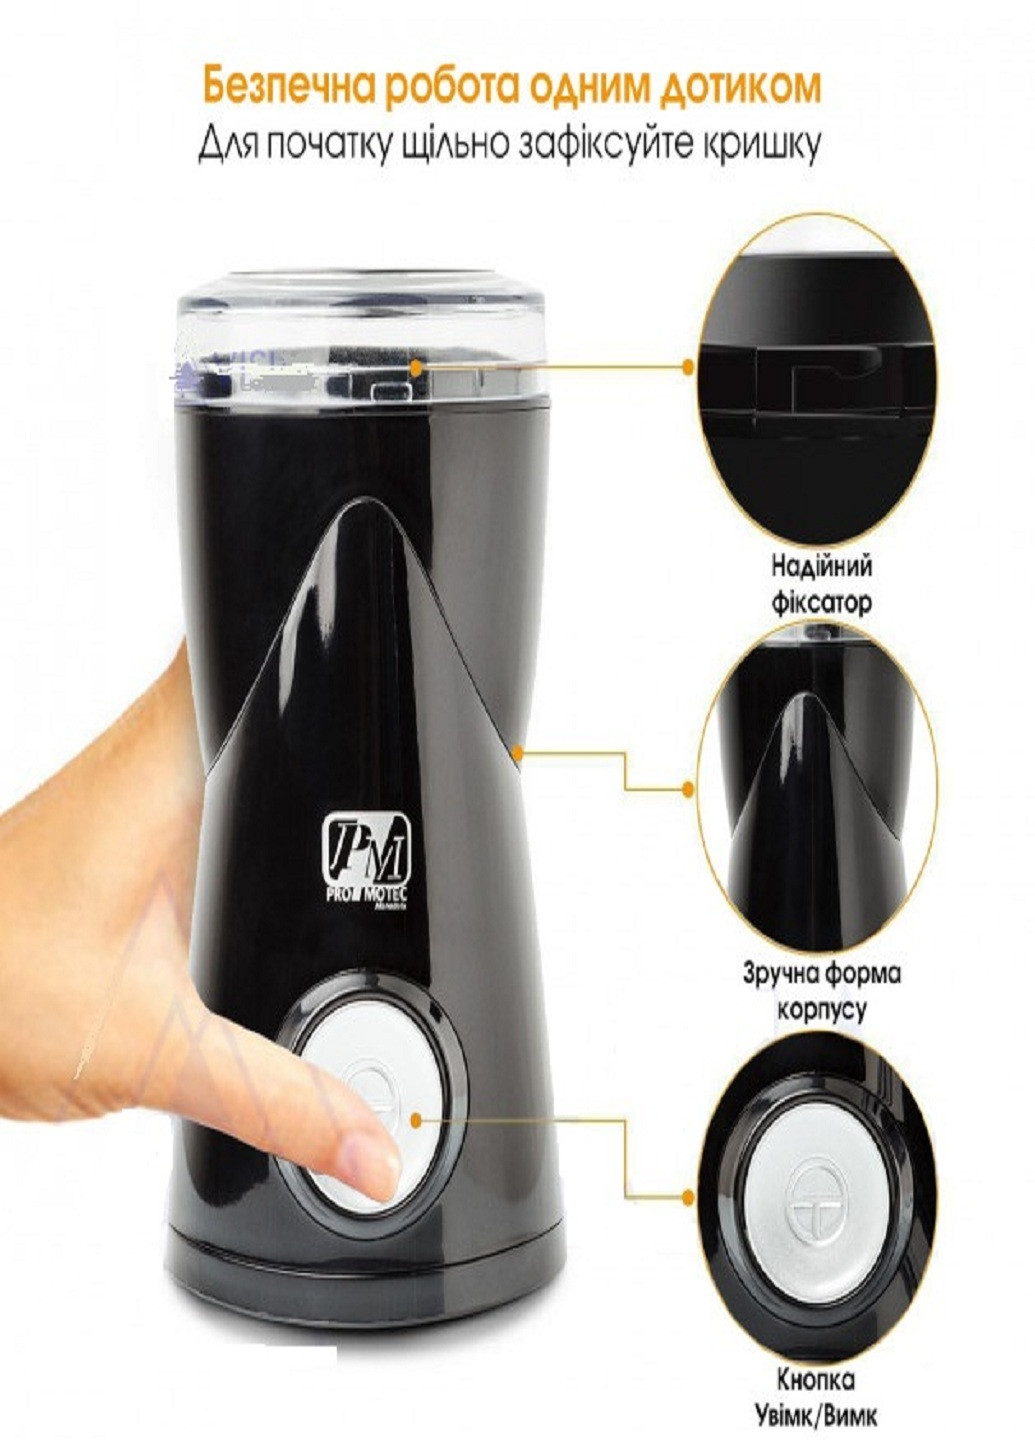 Кофемолка кухонная PM-597 измельчитель для кофе 200 Вт Черная Promotec (253932387)